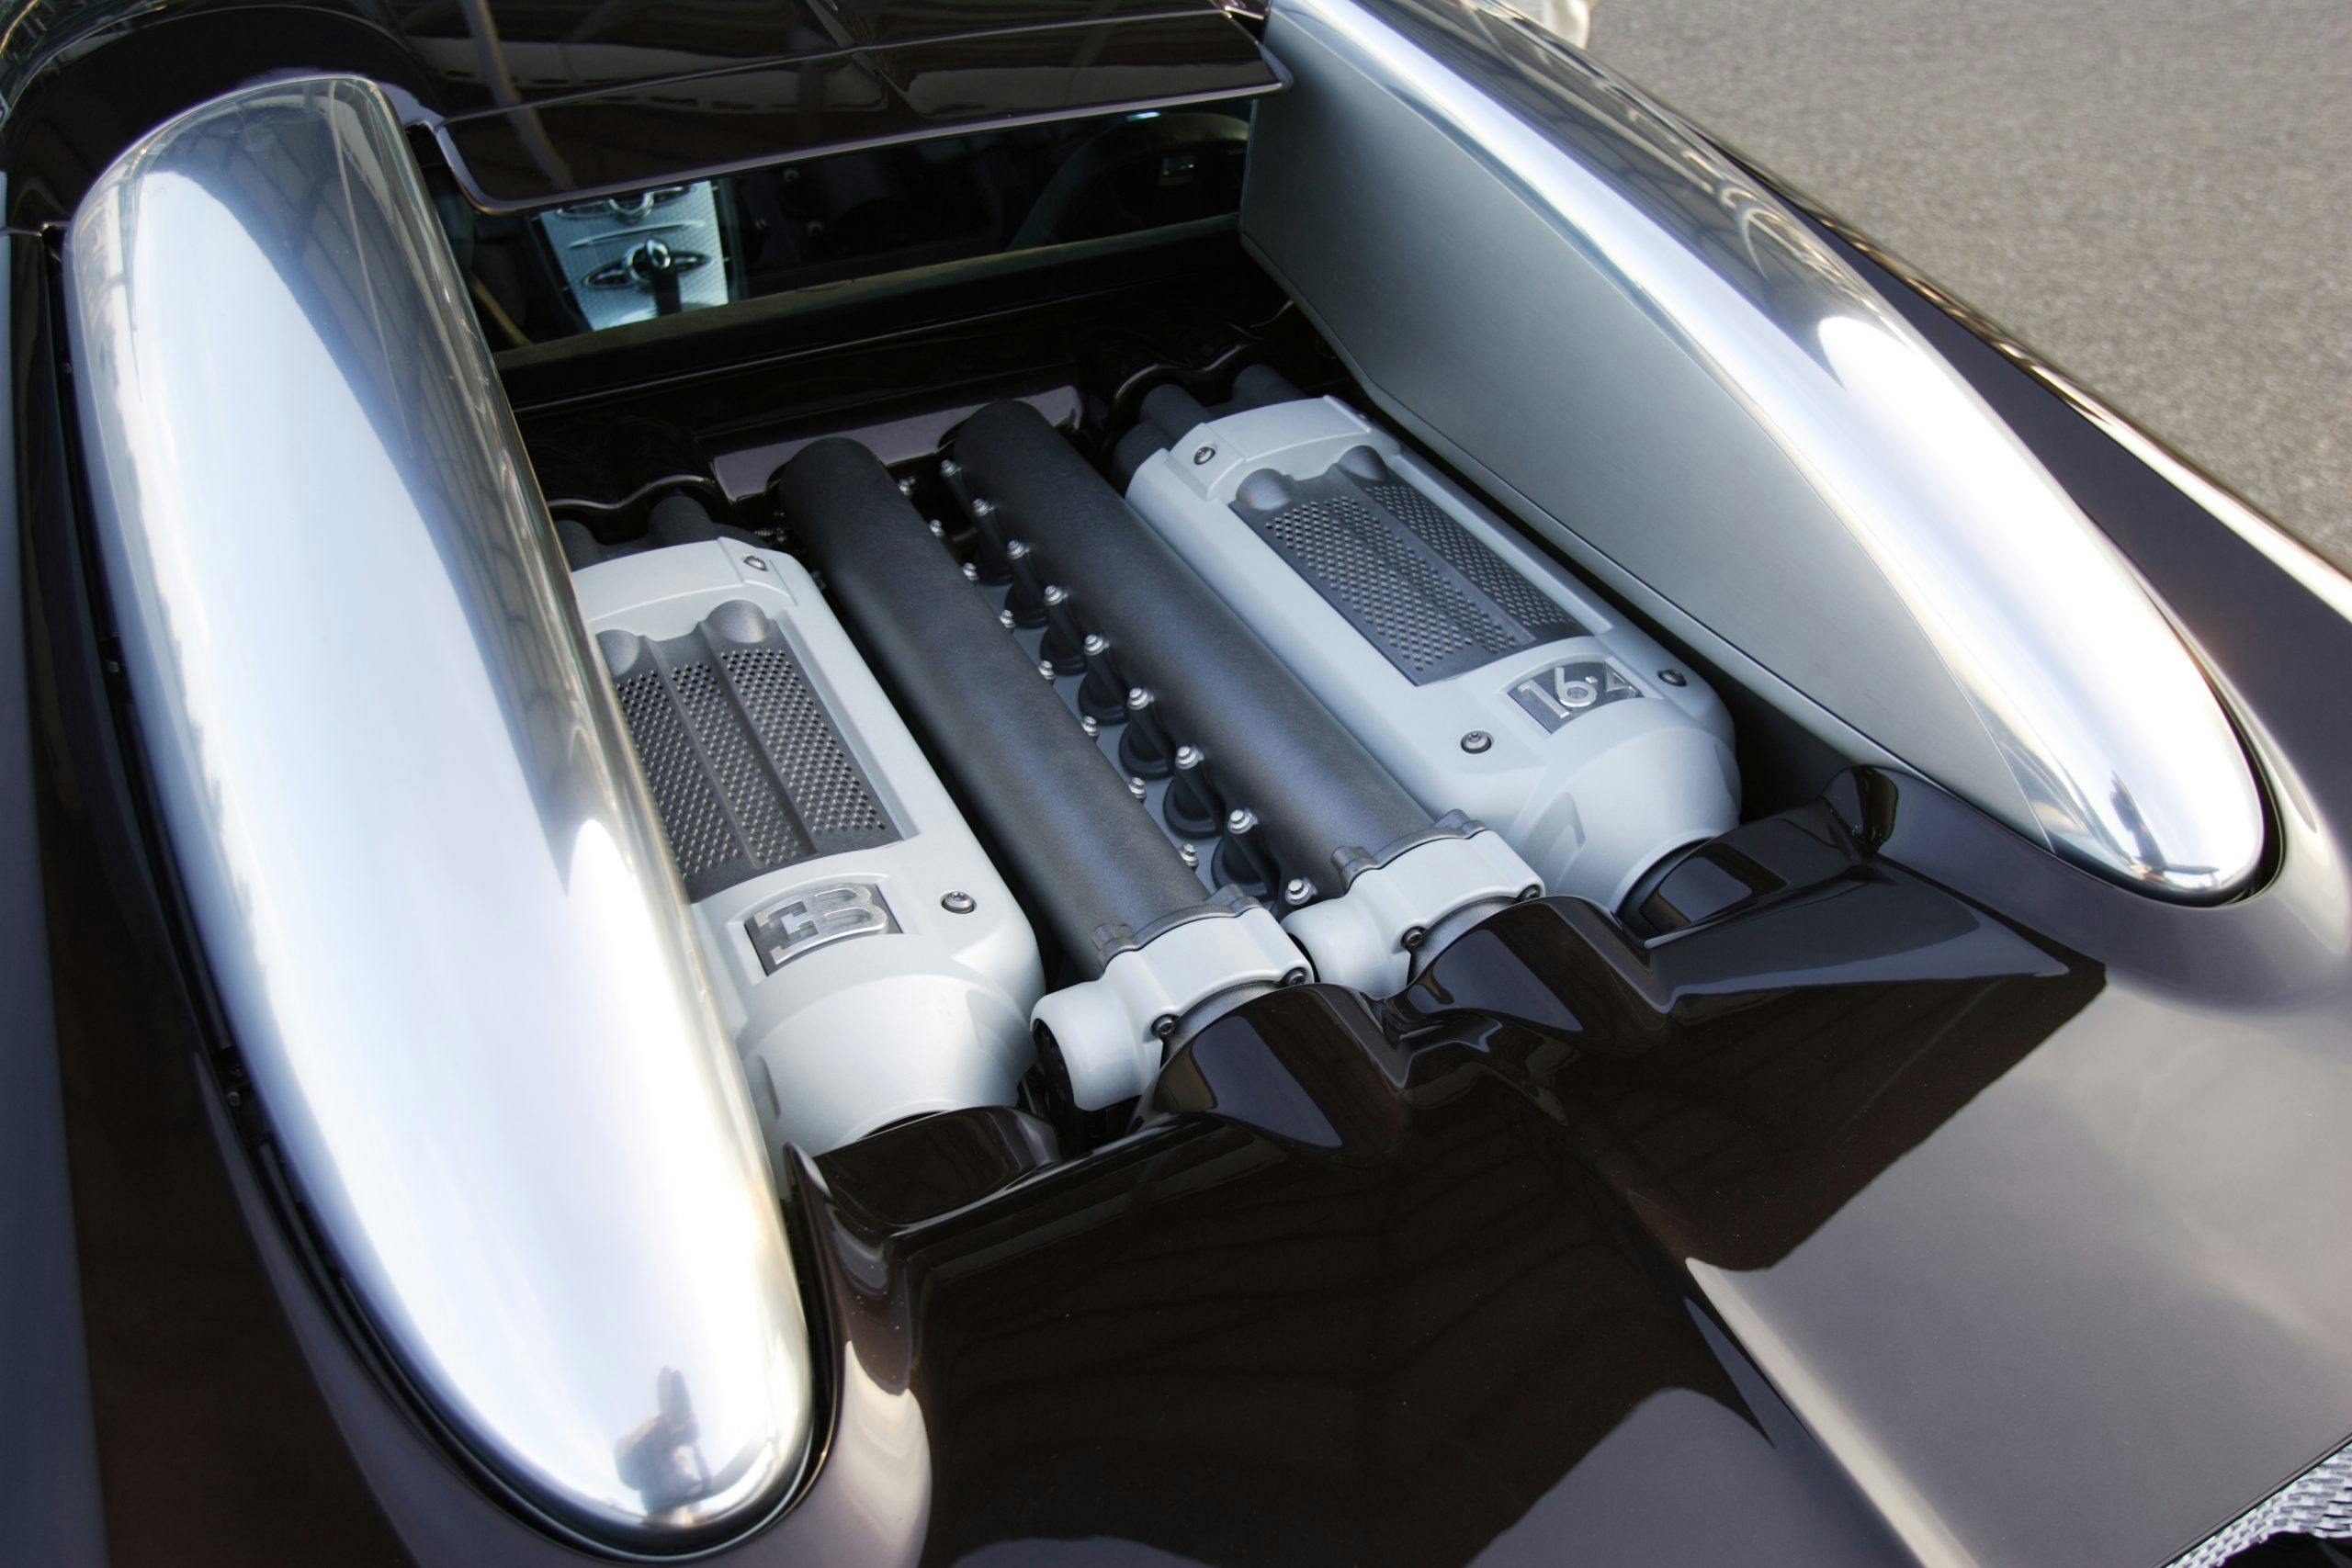 Bugatti Veyron engine